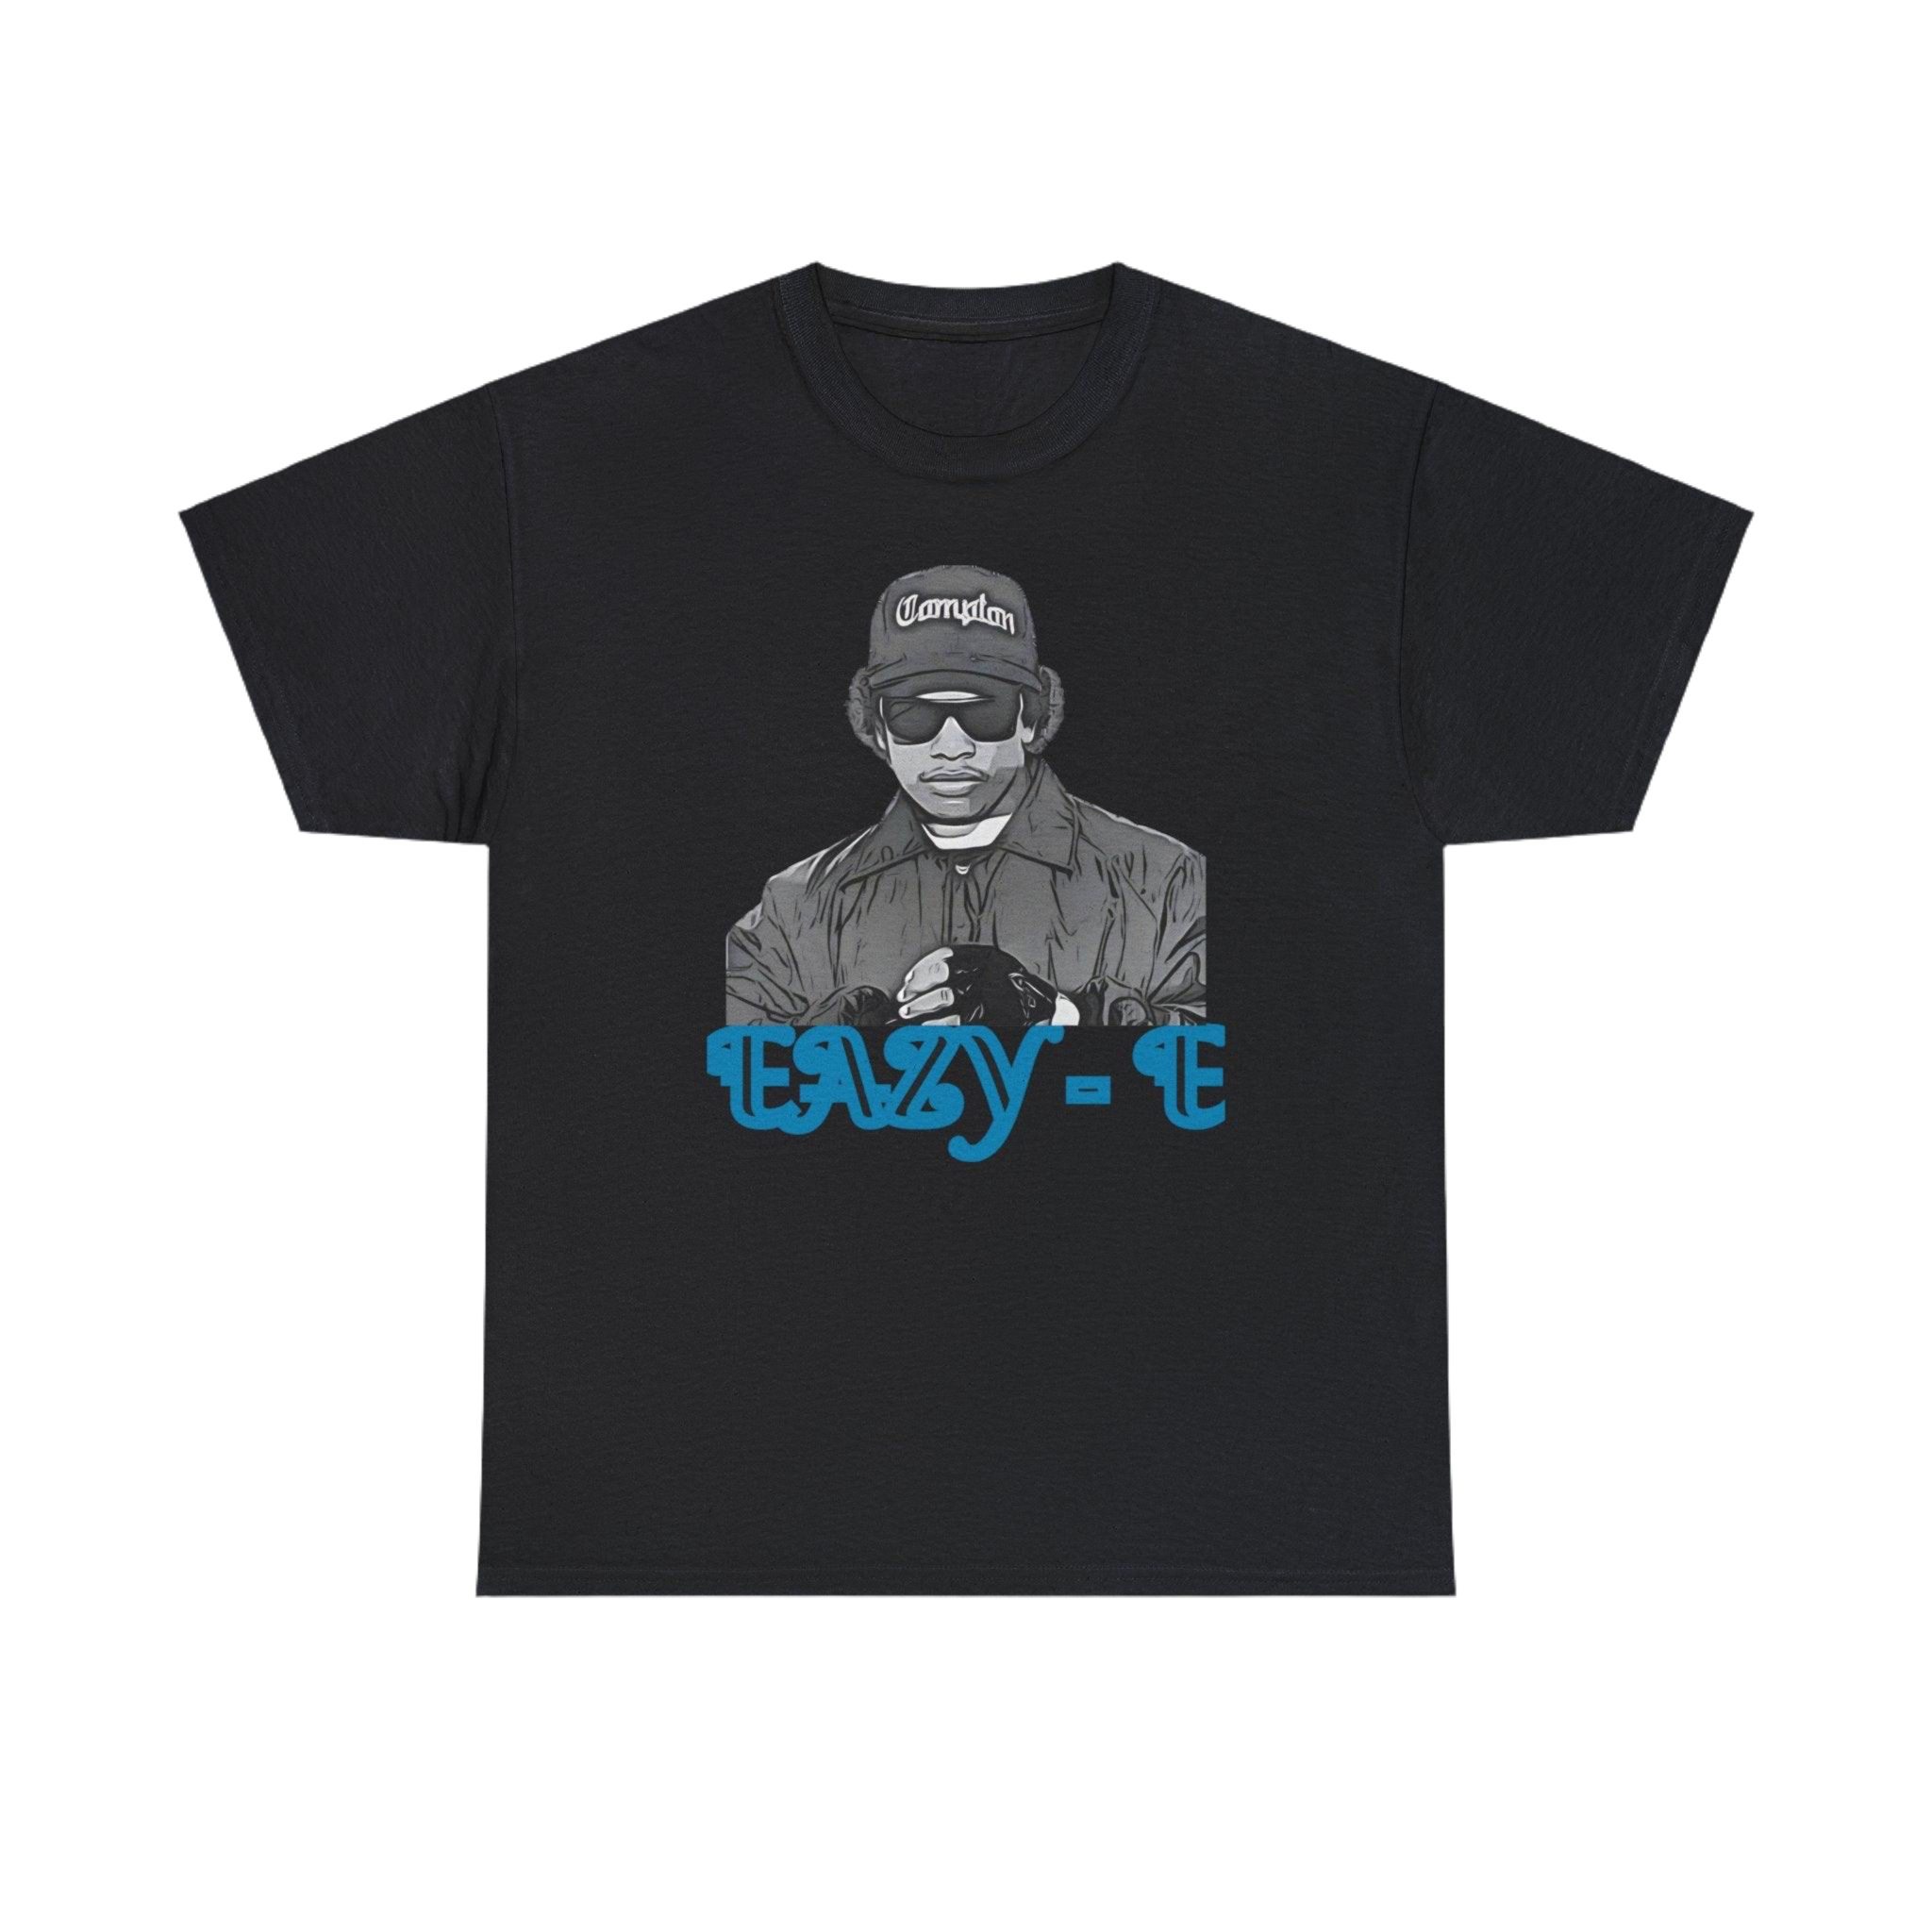 Eazy E t-shirt